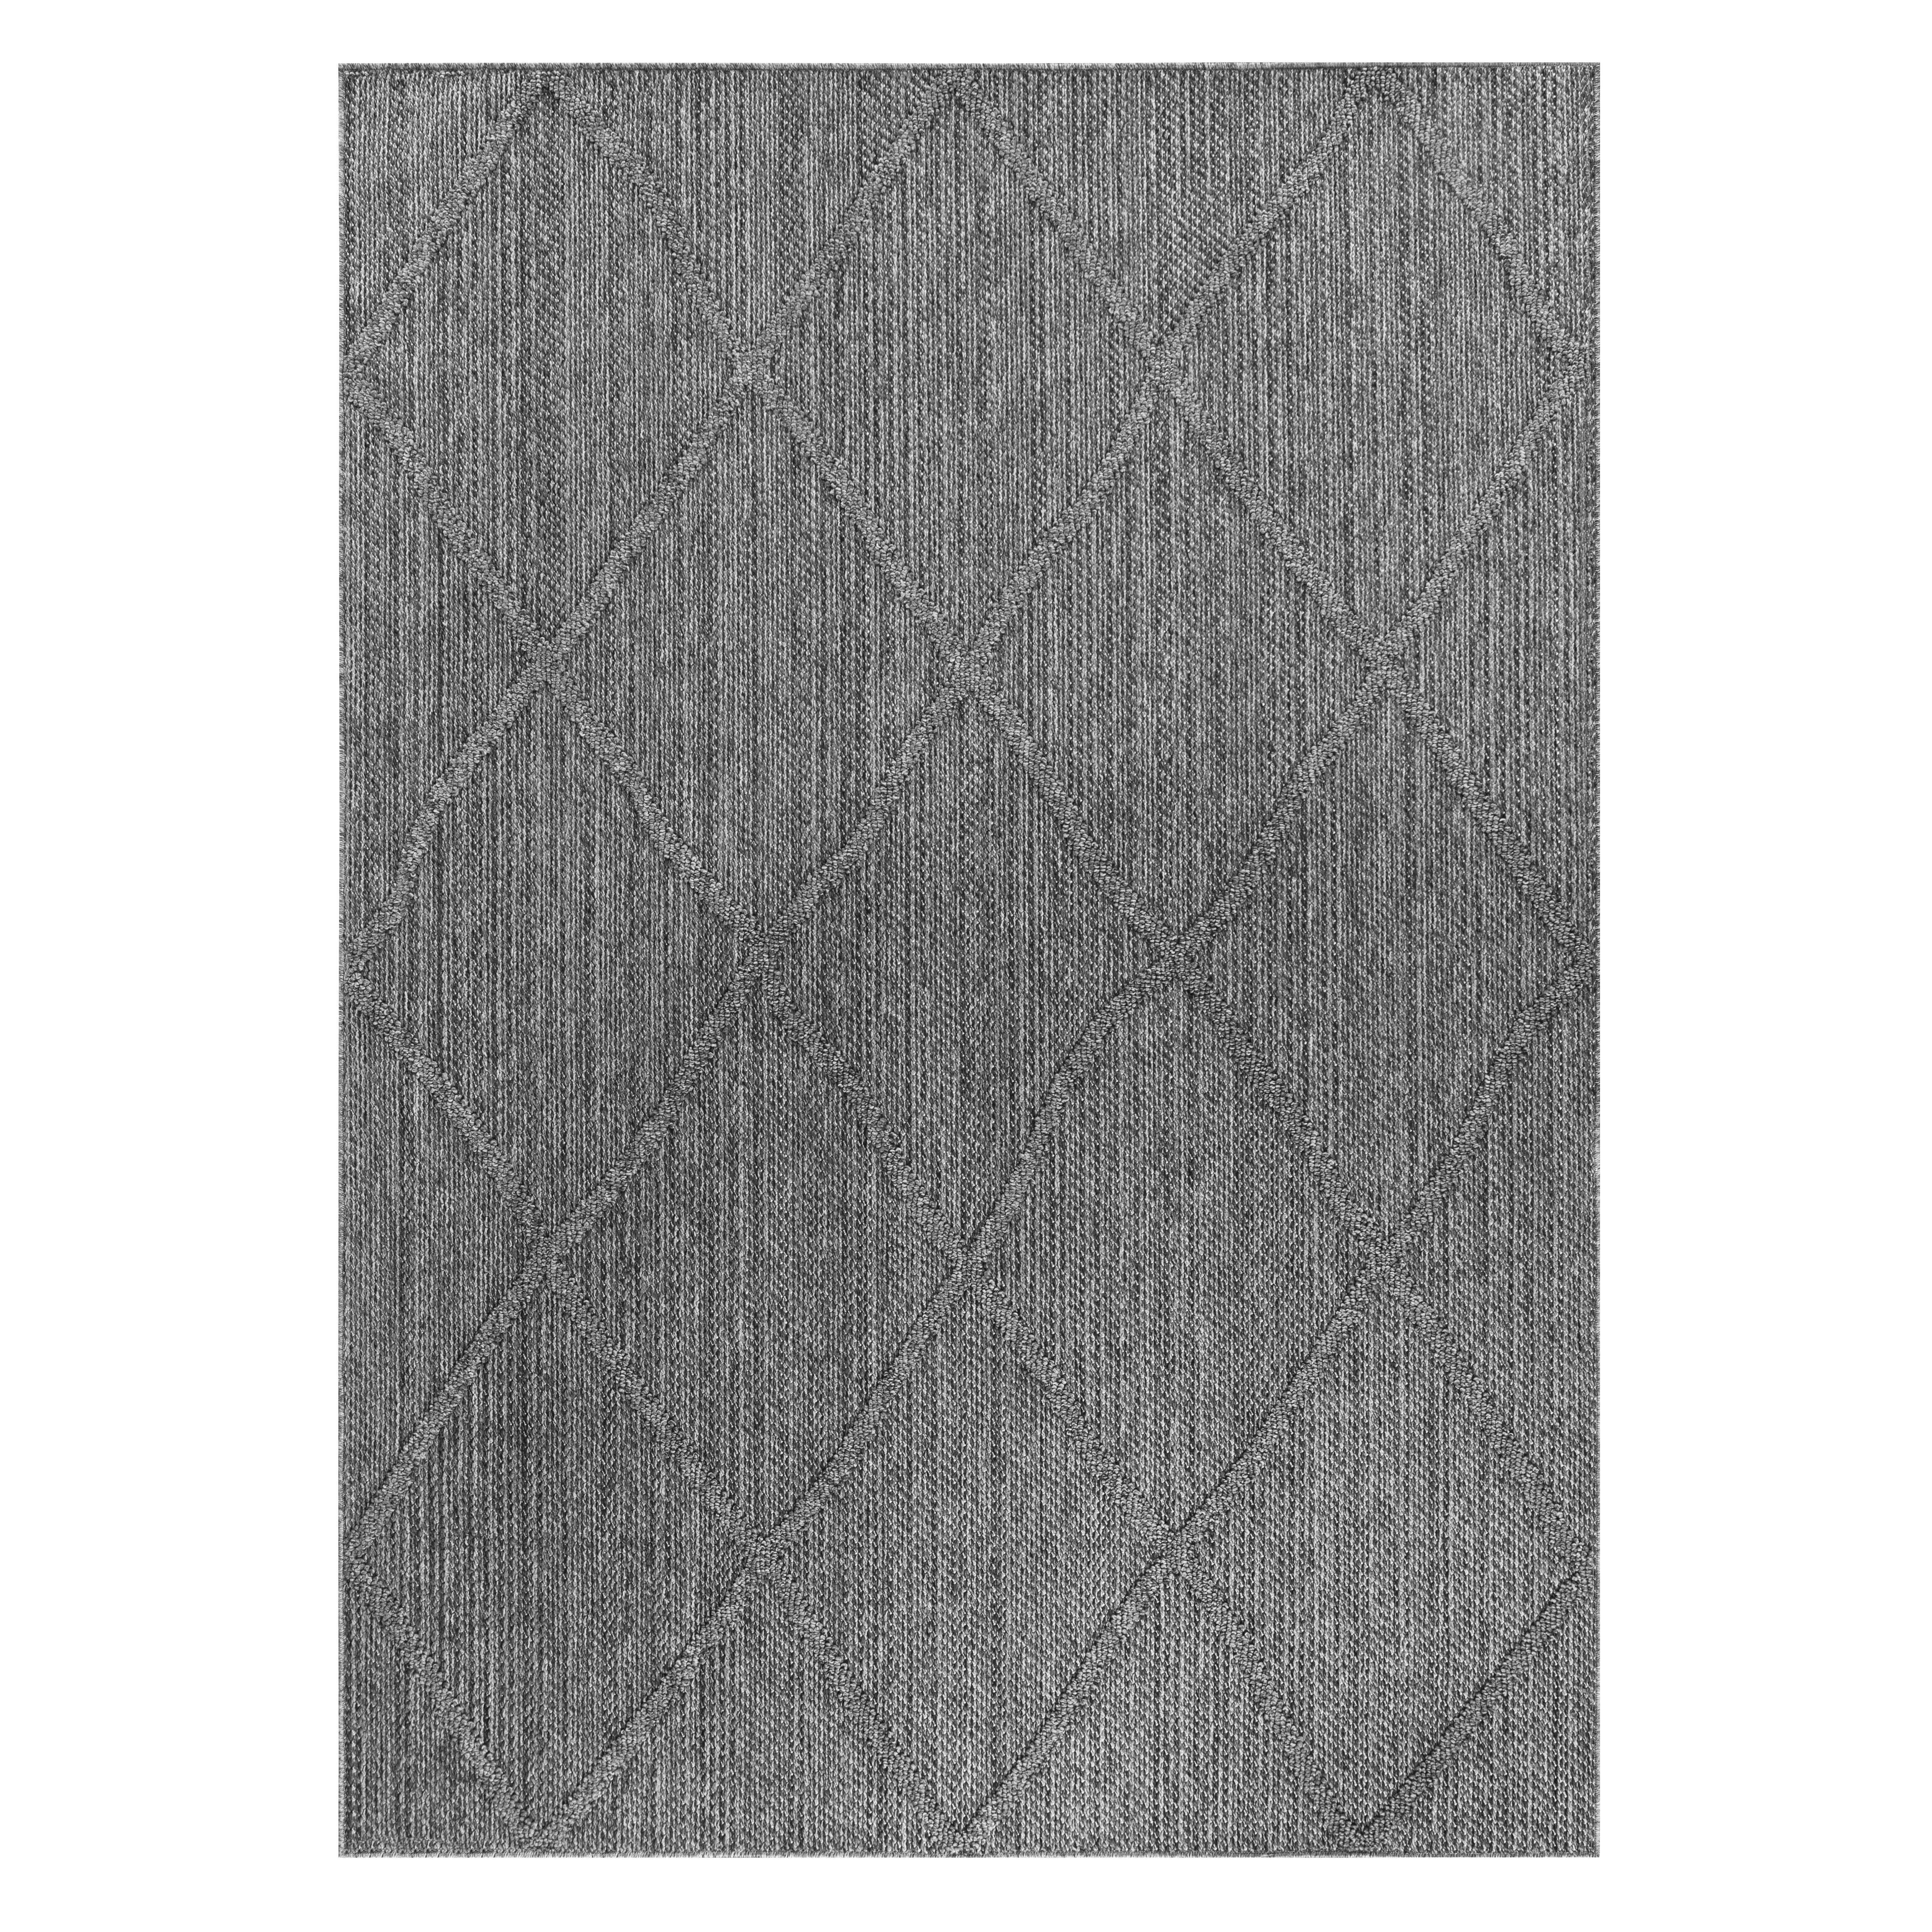 OUTDOORTEPPICH 200/290 cm Patara  - Grau, Design, Textil (200/290cm) - Novel